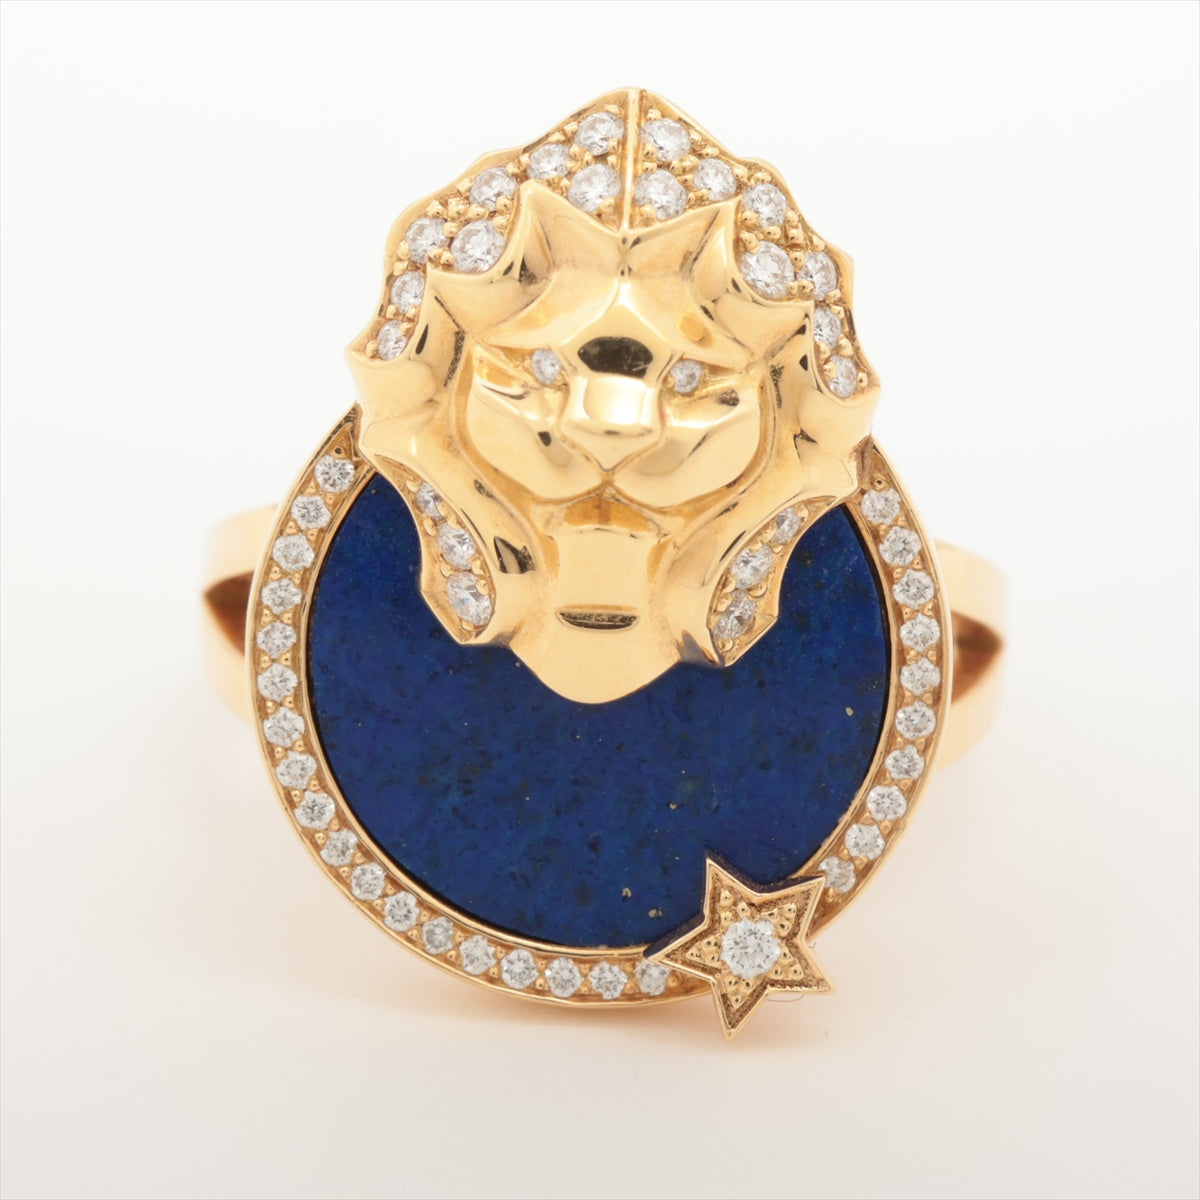 Chanel Sur Chignes Du Rion Lapis lazuli Diamond Ring 750(YG) 9.4g 53